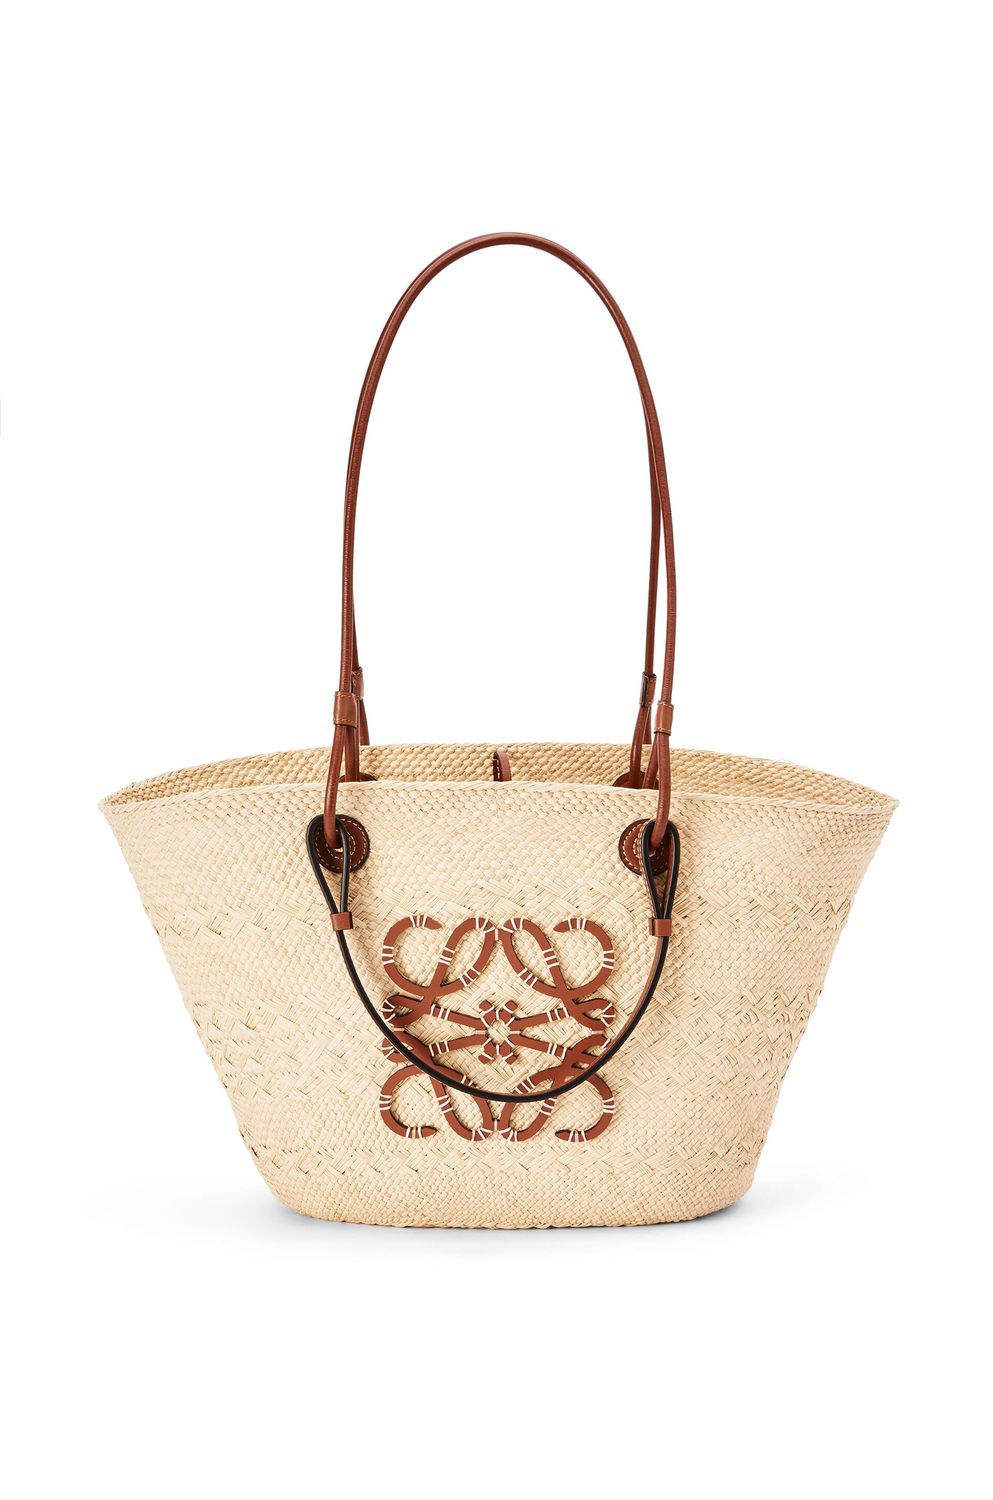 LOEWE Women's Medium Anagram Weave Basket Handbag in Tan